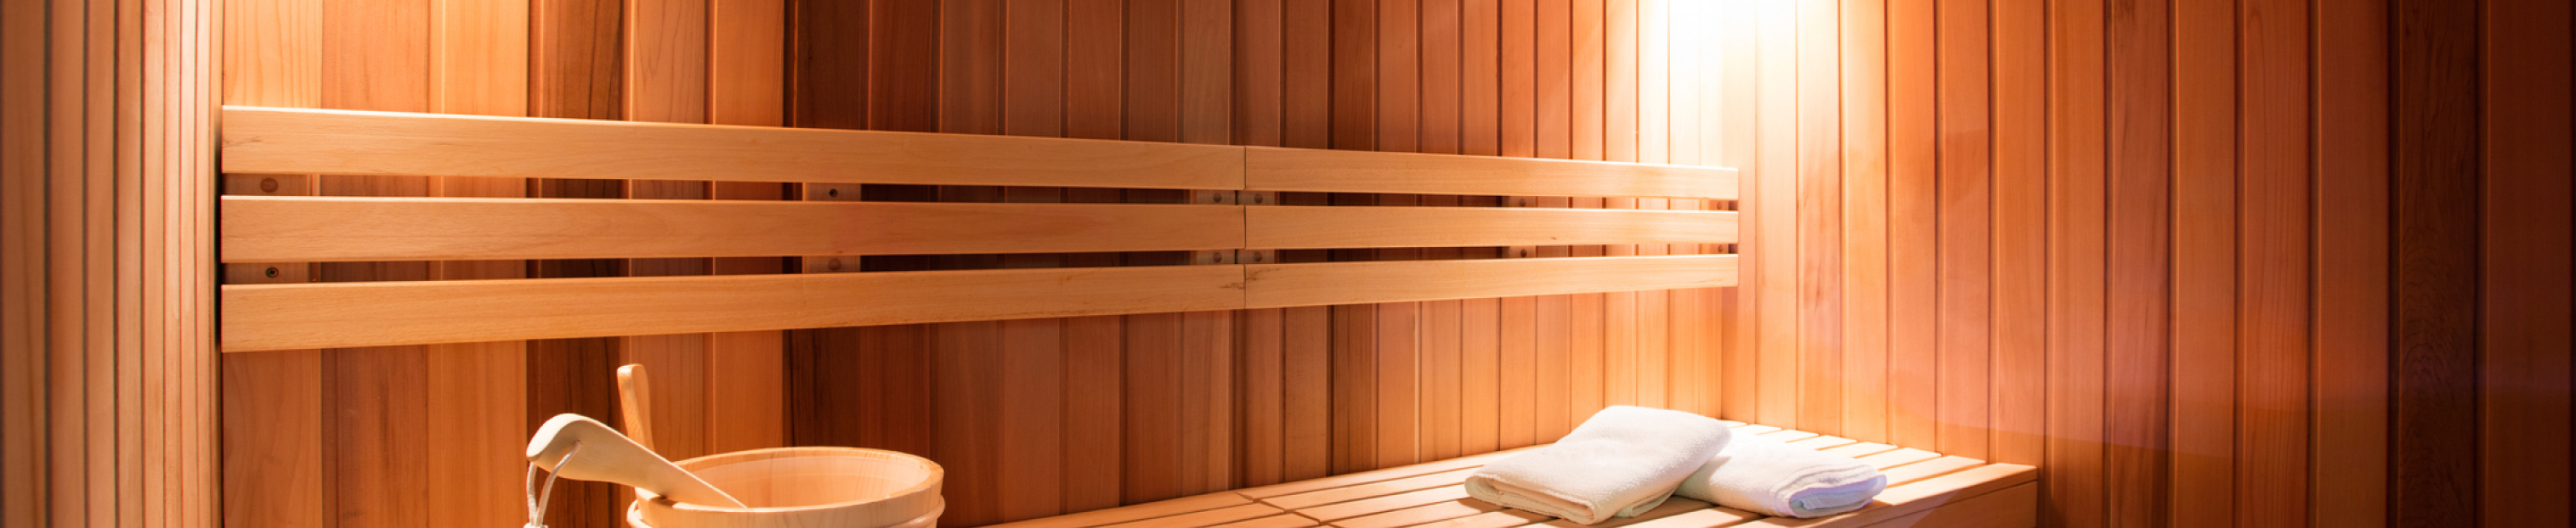 Budowa sauny 